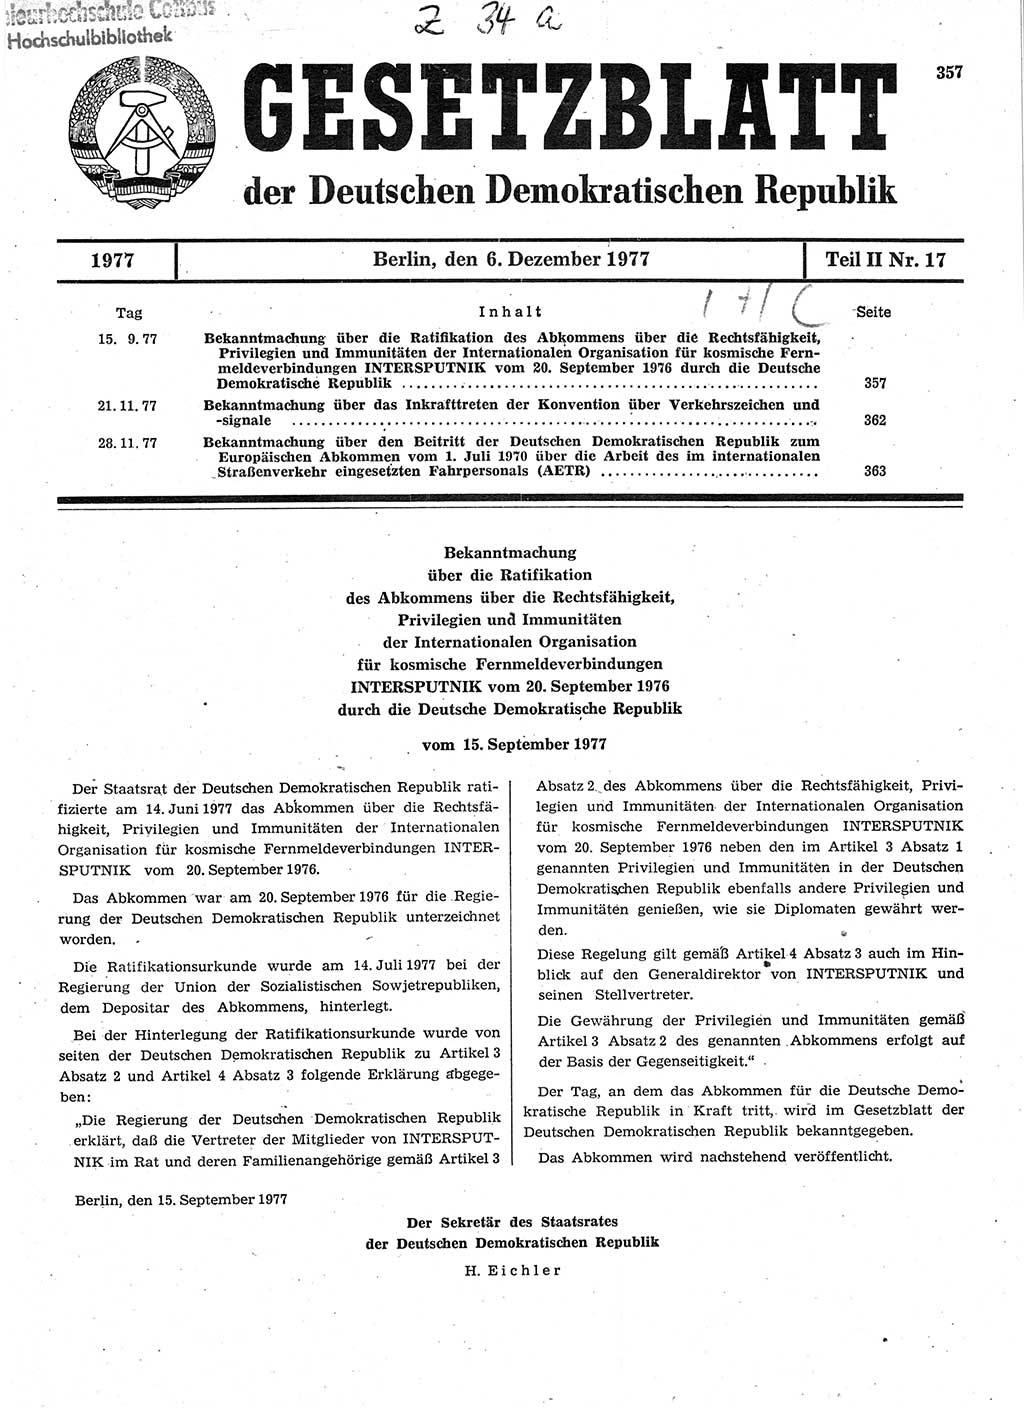 Gesetzblatt (GBl.) der Deutschen Demokratischen Republik (DDR) Teil ⅠⅠ 1977, Seite 357 (GBl. DDR ⅠⅠ 1977, S. 357)